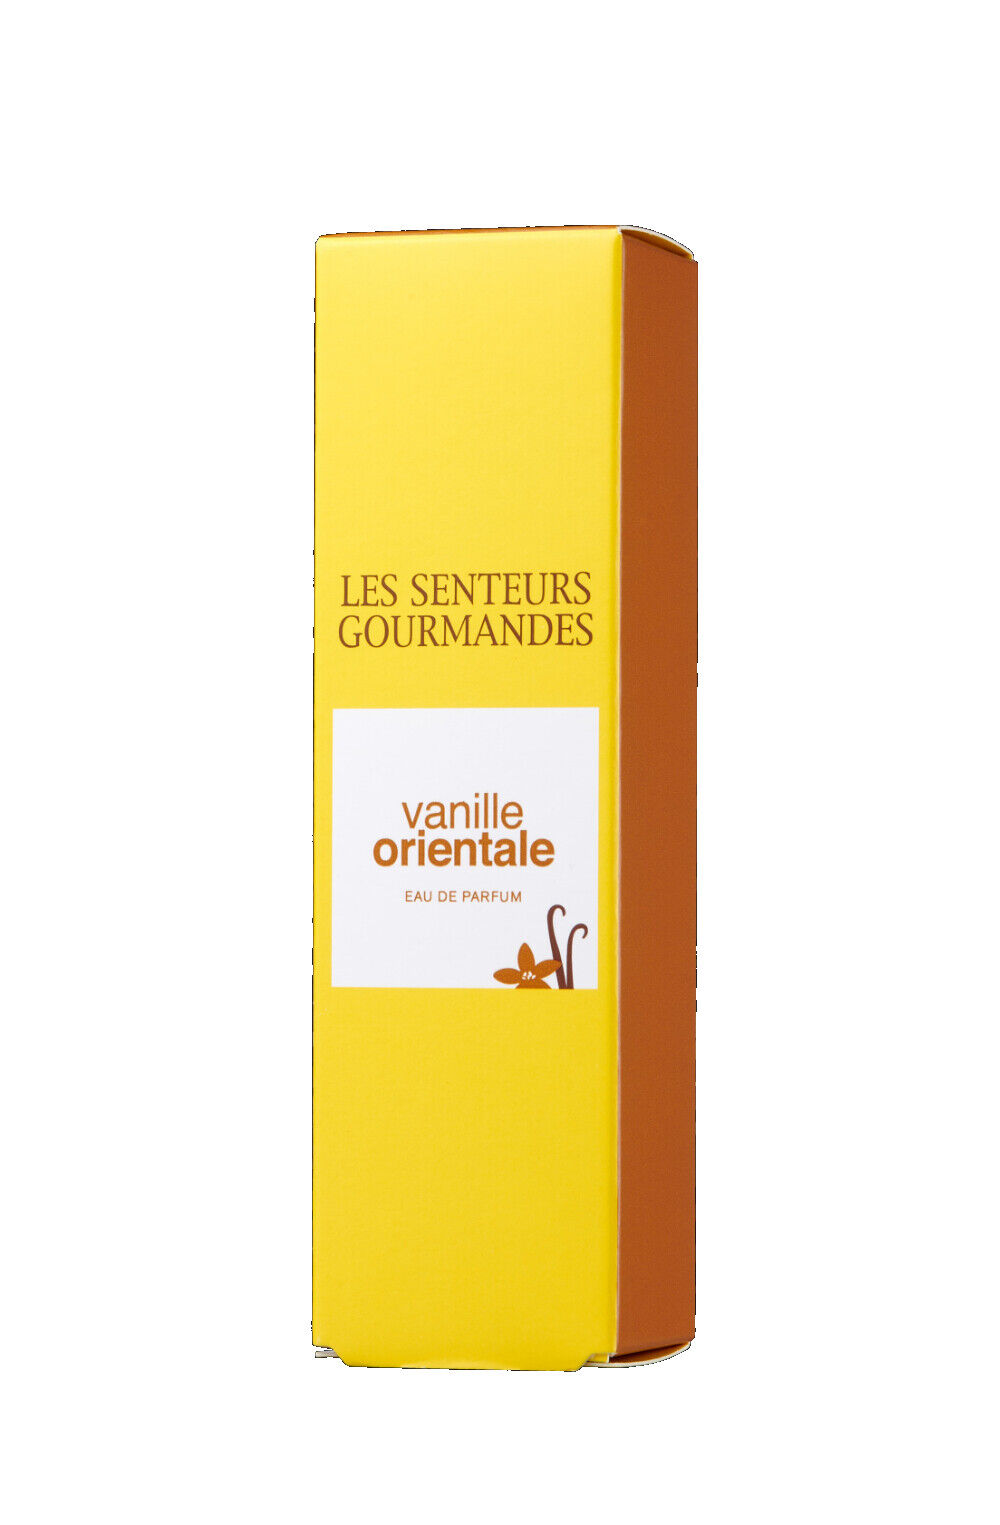 Fragrance duty free - Zegna Lauder - Panier Des Sens - PC687